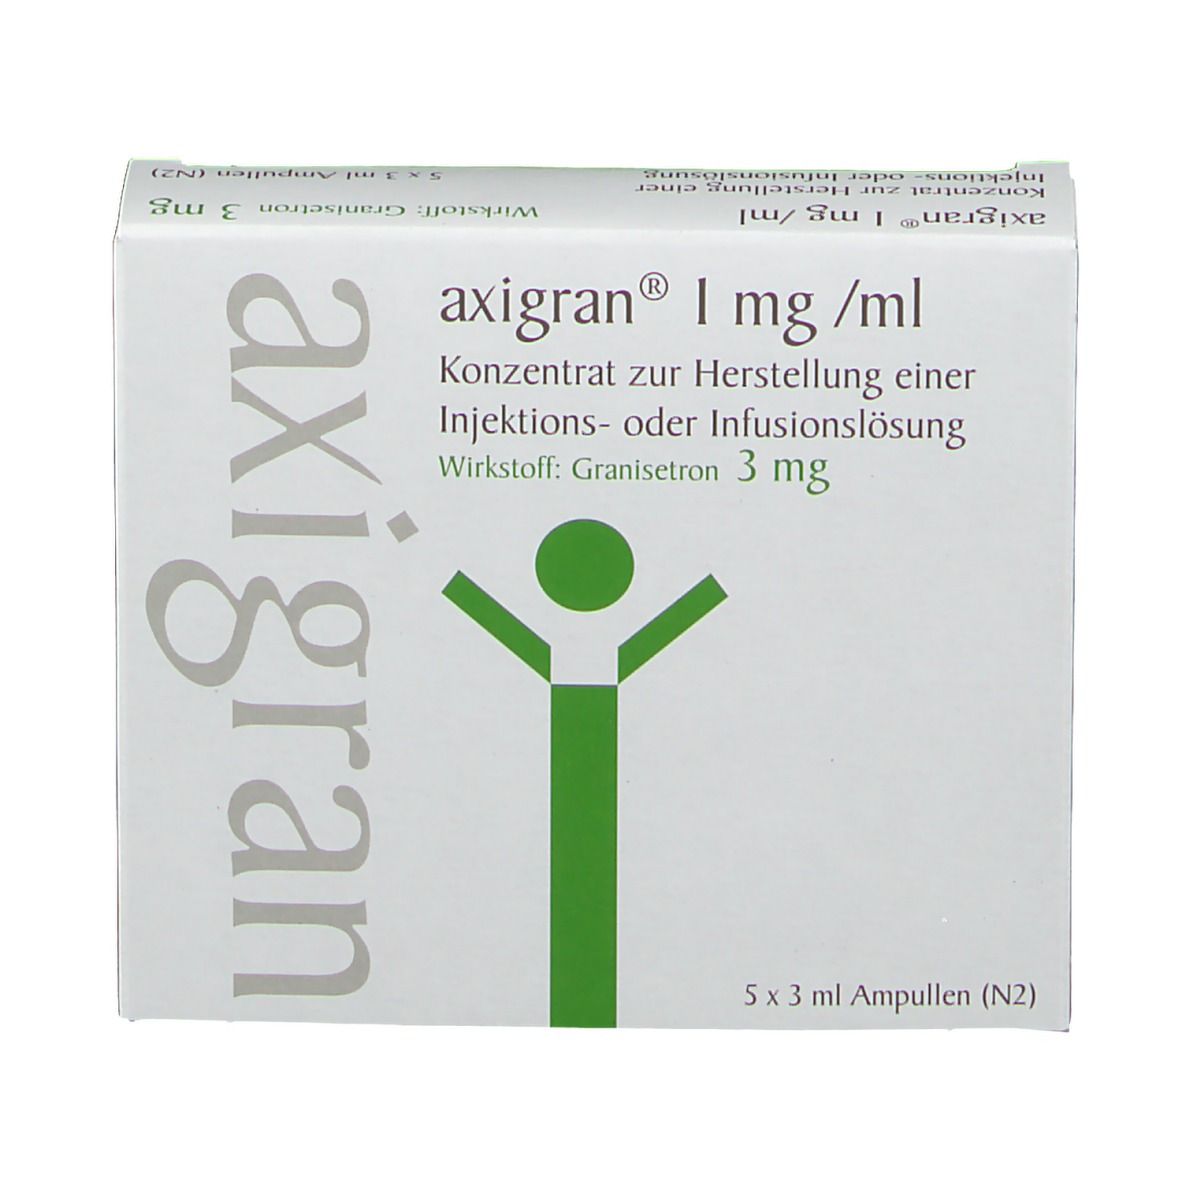 axigran® 1 mg/ml